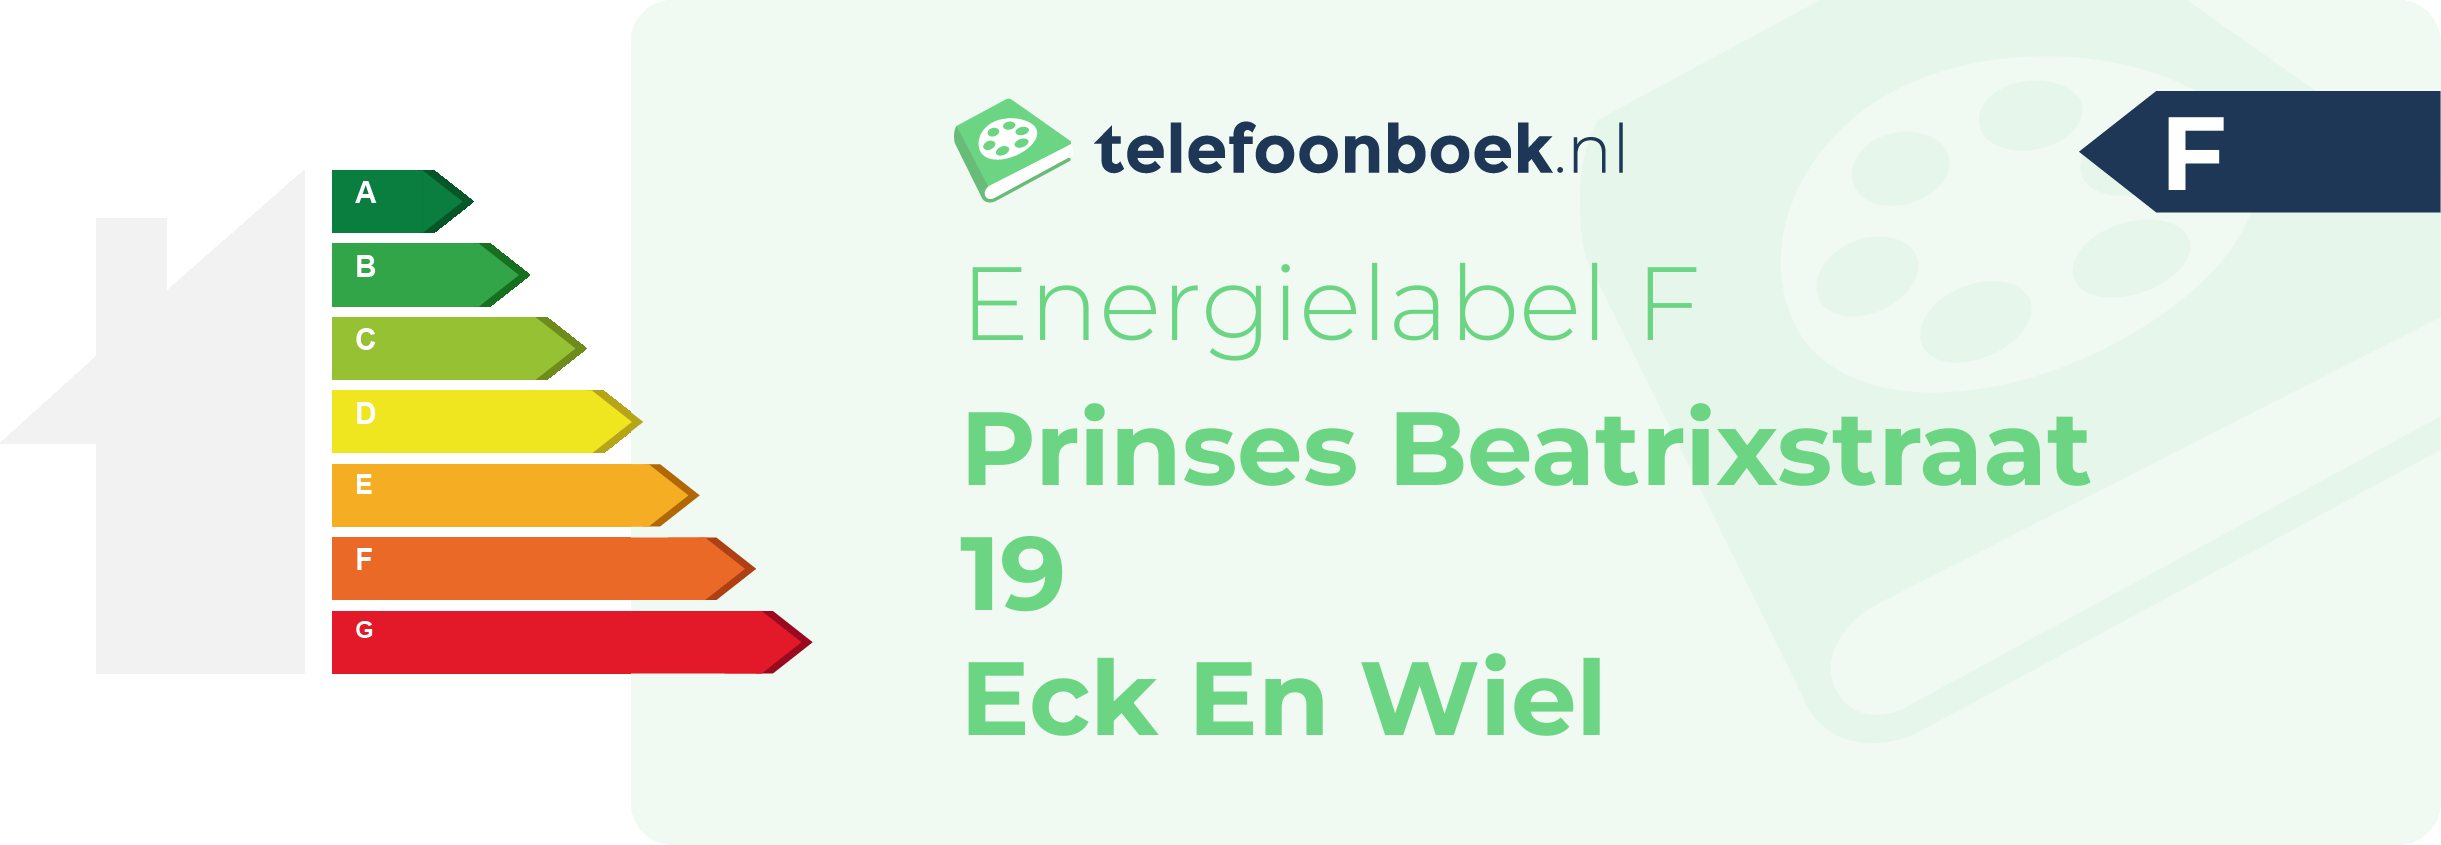 Energielabel Prinses Beatrixstraat 19 Eck En Wiel